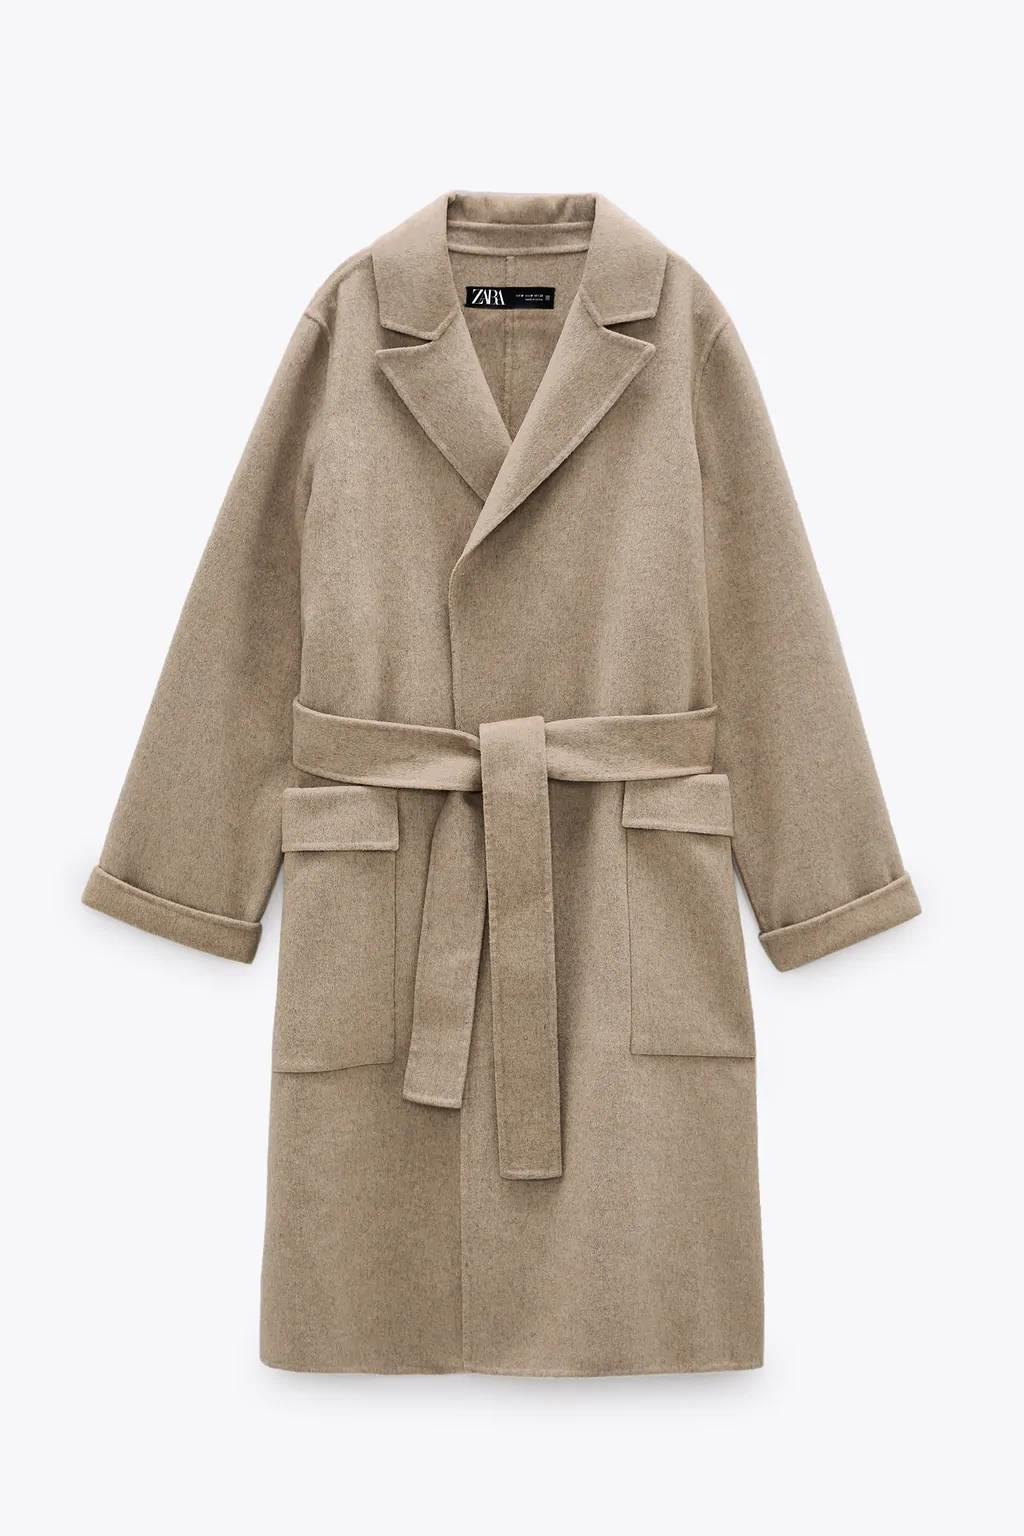 Abrigo de lana con cinturón, Zara